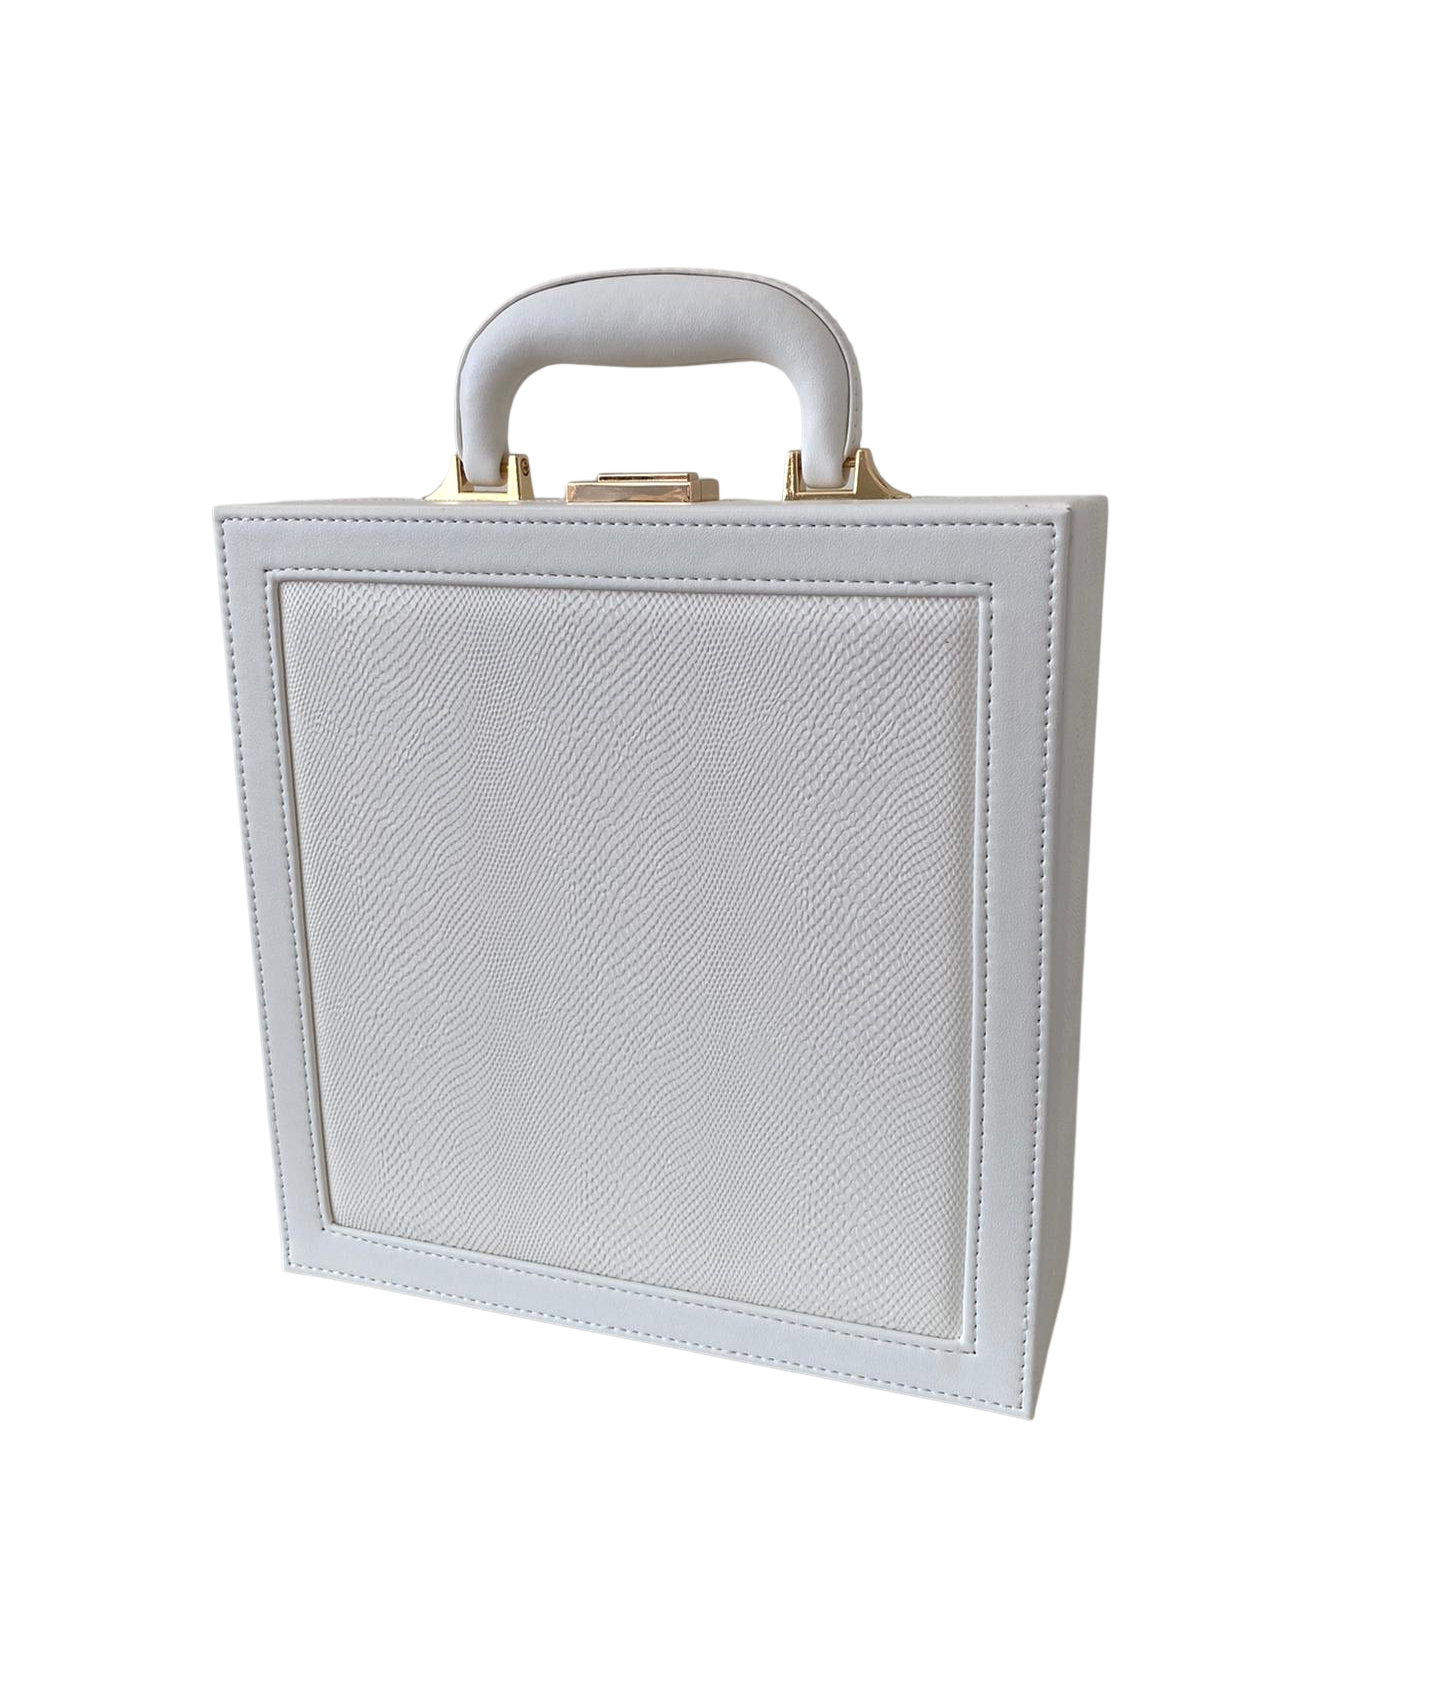 Briefcase Case Medium Size - ON ORDER